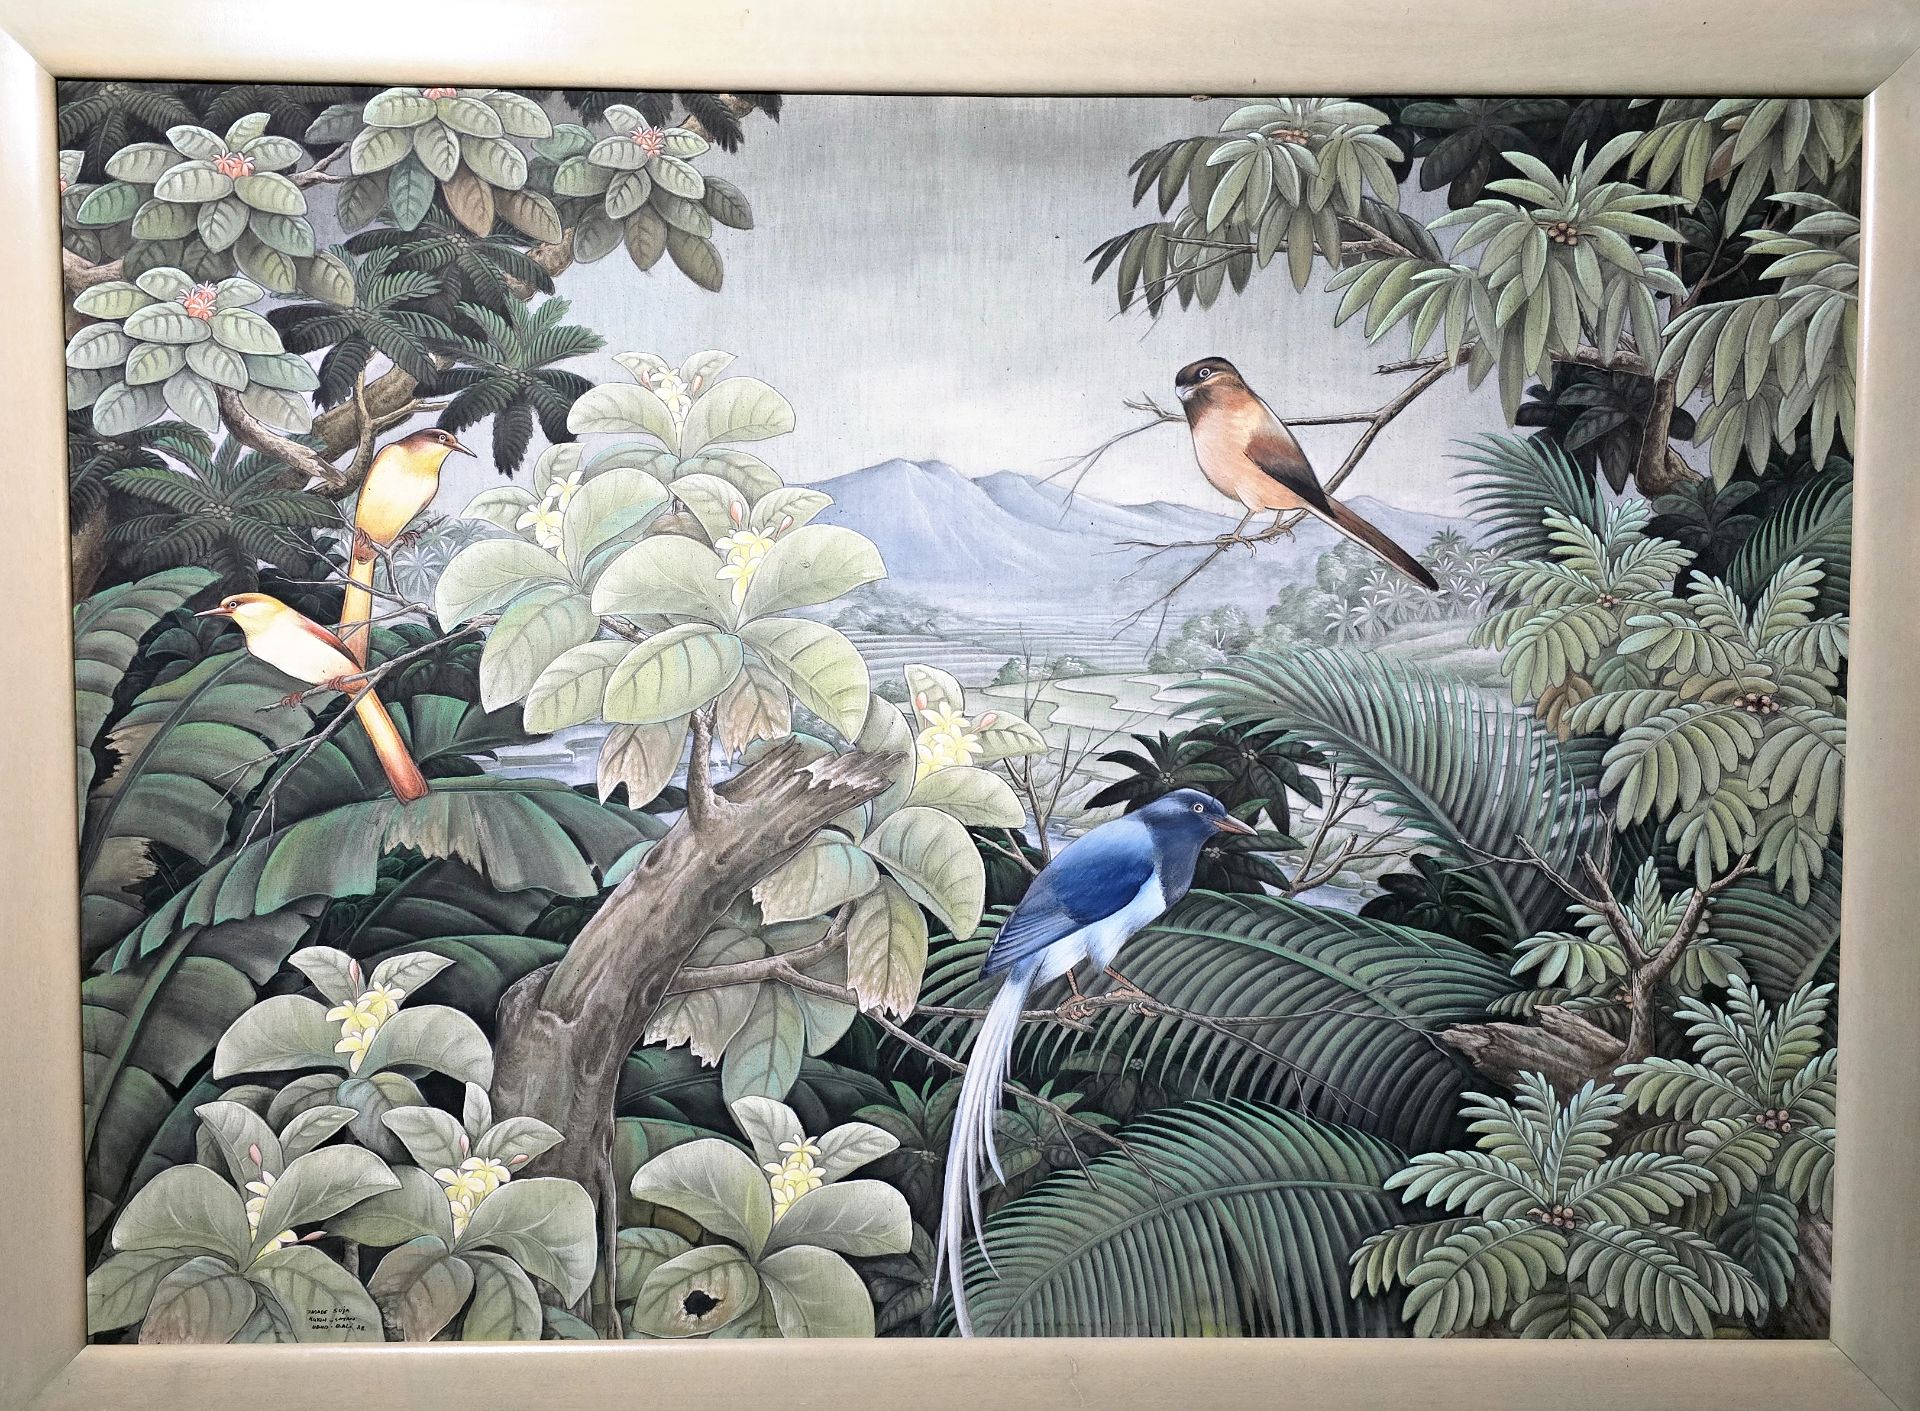 Peinture sur toile Bali 'Paysage Jungle' signé Suja 1988